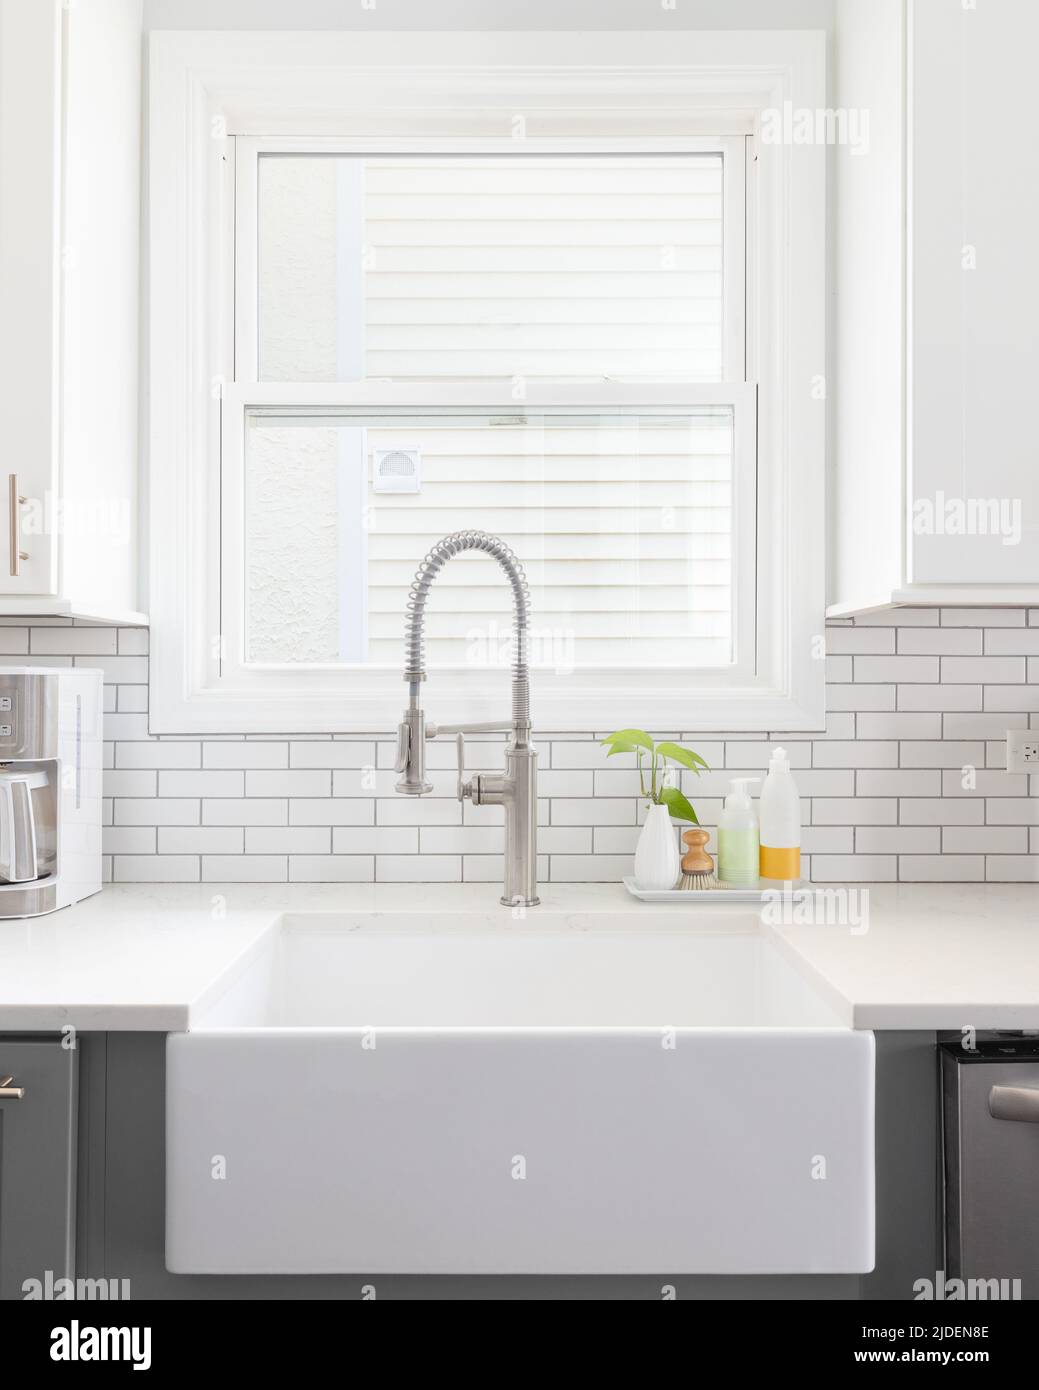 Agriturismo lavello da cucina con metropolitana backsplash tile e scaffali  in legno. Cucina moderna ristrutturazione Foto stock - Alamy